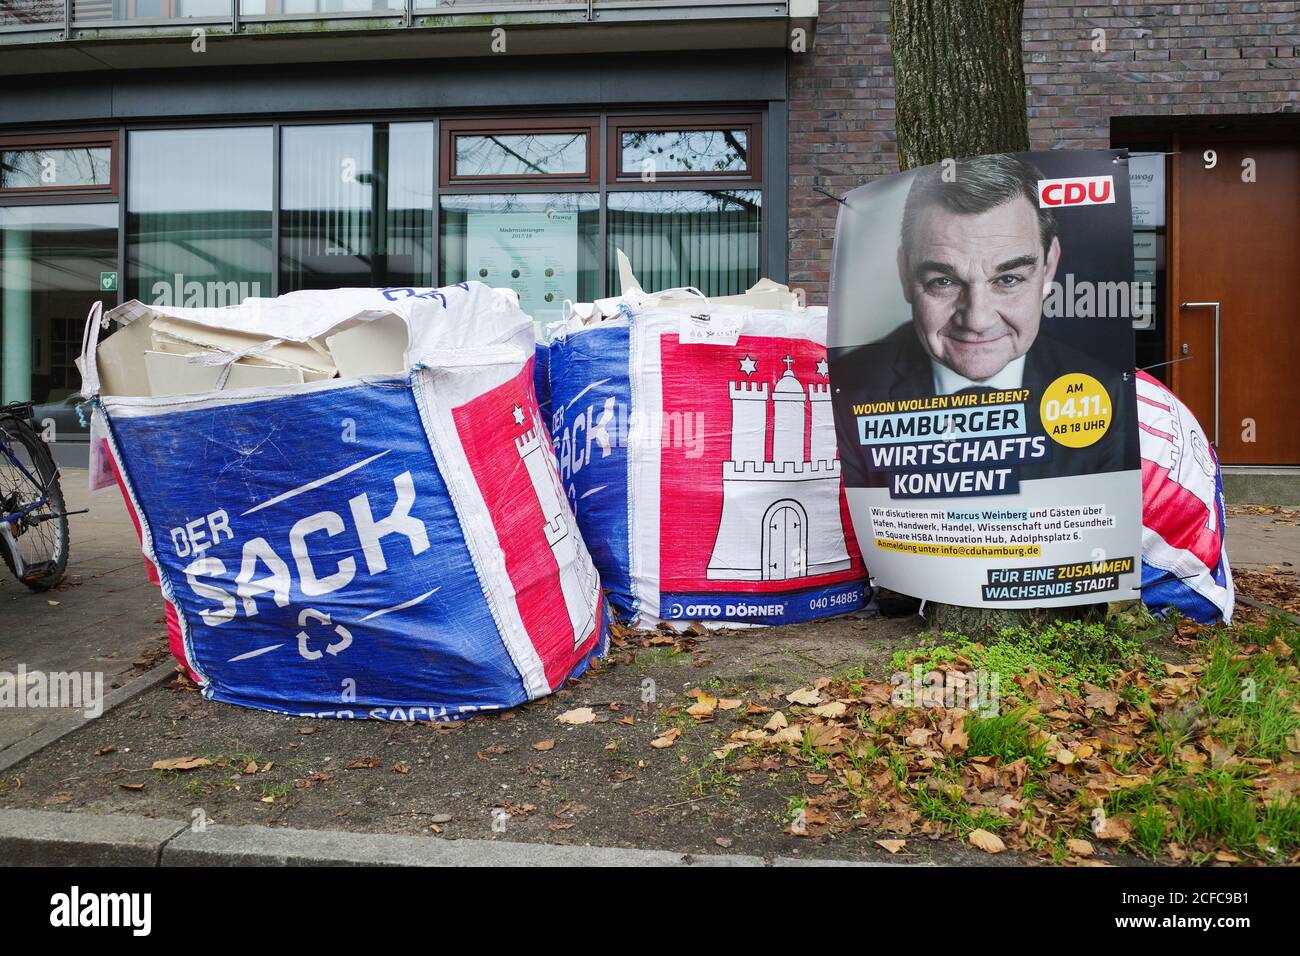 Targhetta della CDU. Elezioni dello stato di Amburgo, sacchi di spazzatura con stemma di Amburgo e l'iscrizione 'Der Sack', Amburgo, Germania, 02 dicembre 2019 Foto Stock